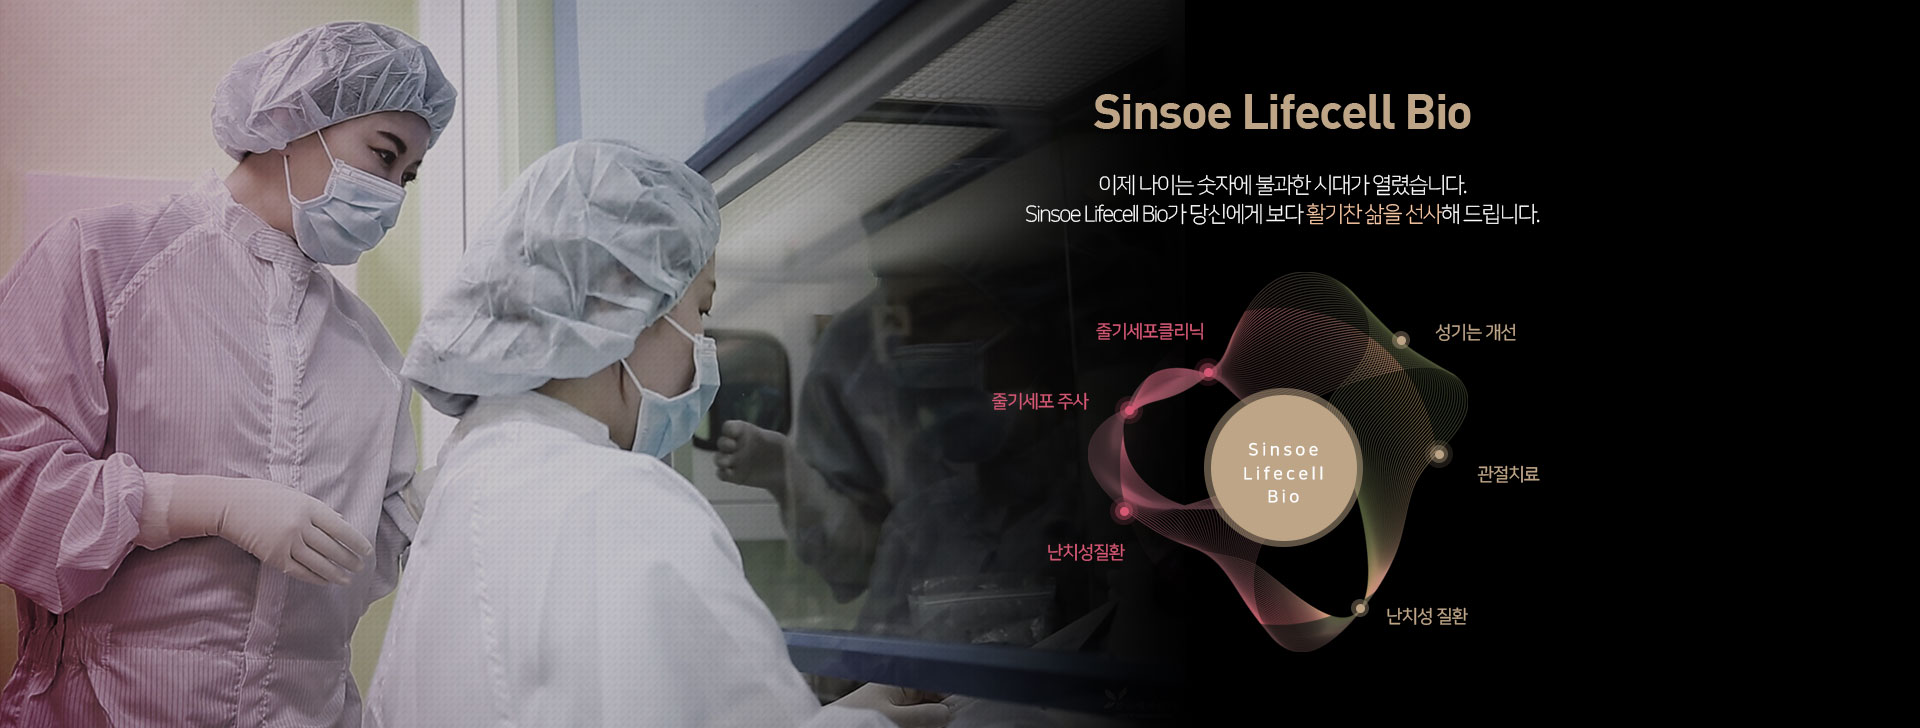 이제 나이는 숫자에 불과한 시대가 열렸습니다. Sinsoe Lifecell Bio가 당신에게 보다 활기찬 삶을 선